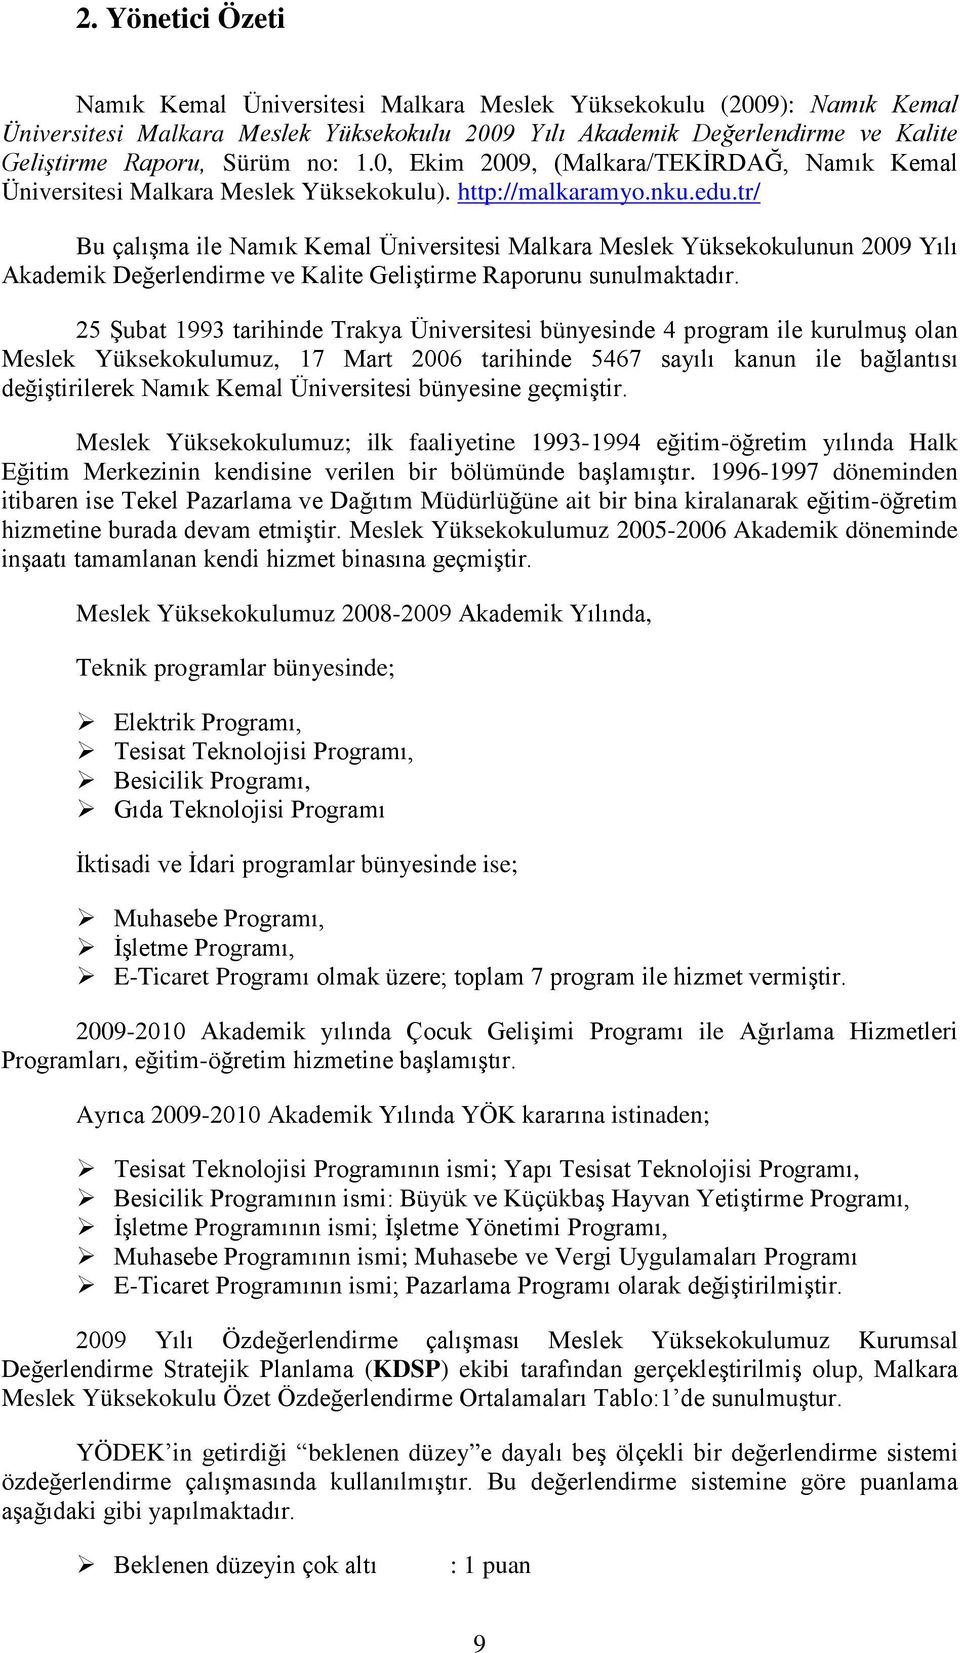 tr/ Bu çalışma ile Namık Kemal Üniversitesi Malkara Meslek Yüksekokulunun 2009 Yılı Akademik Değerlendirme ve Kalite Geliştirme Raporunu sunulmaktadır.